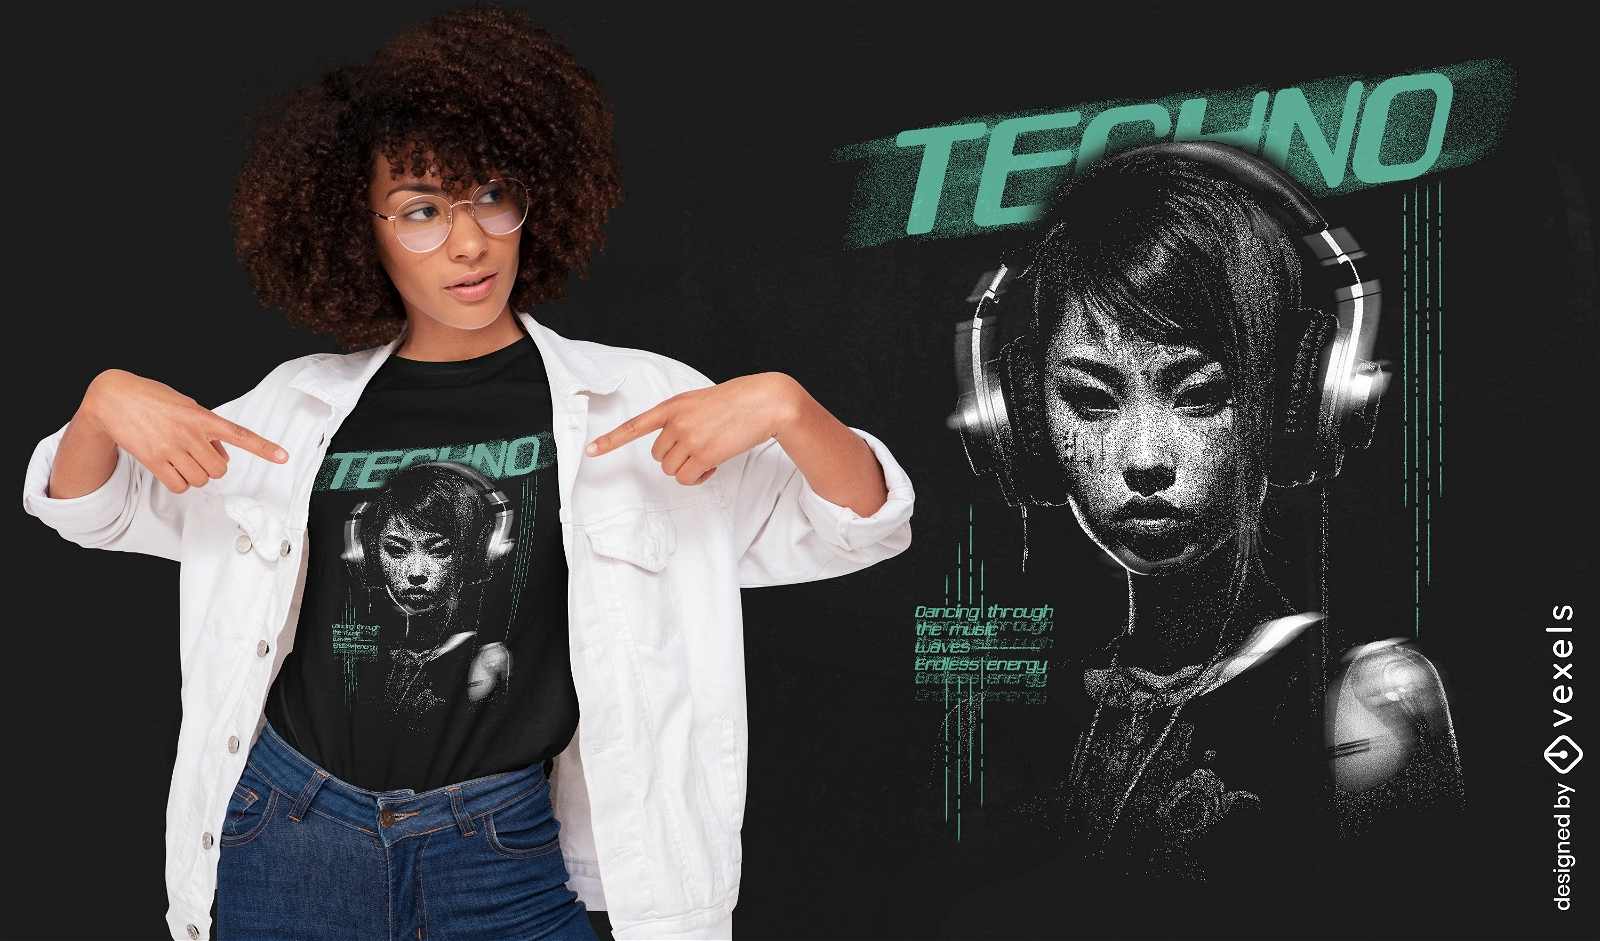 Design futurista de camisetas de música techno